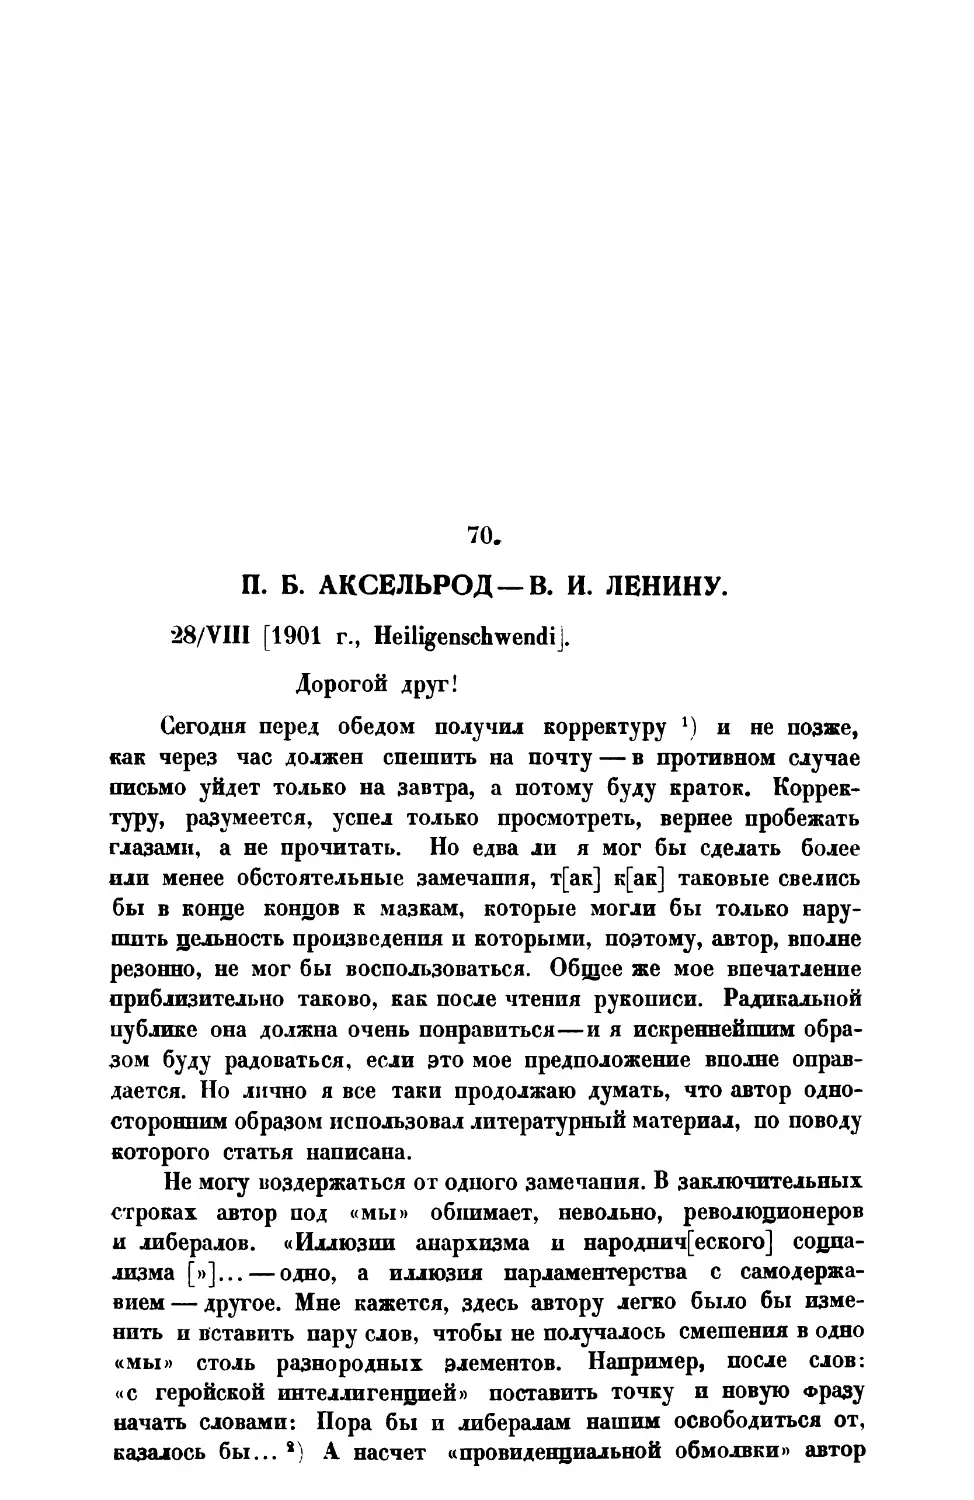 70. П. Б. Аксельрод. — Письмо В. И. Ленину от 28 VIII 1901 г.